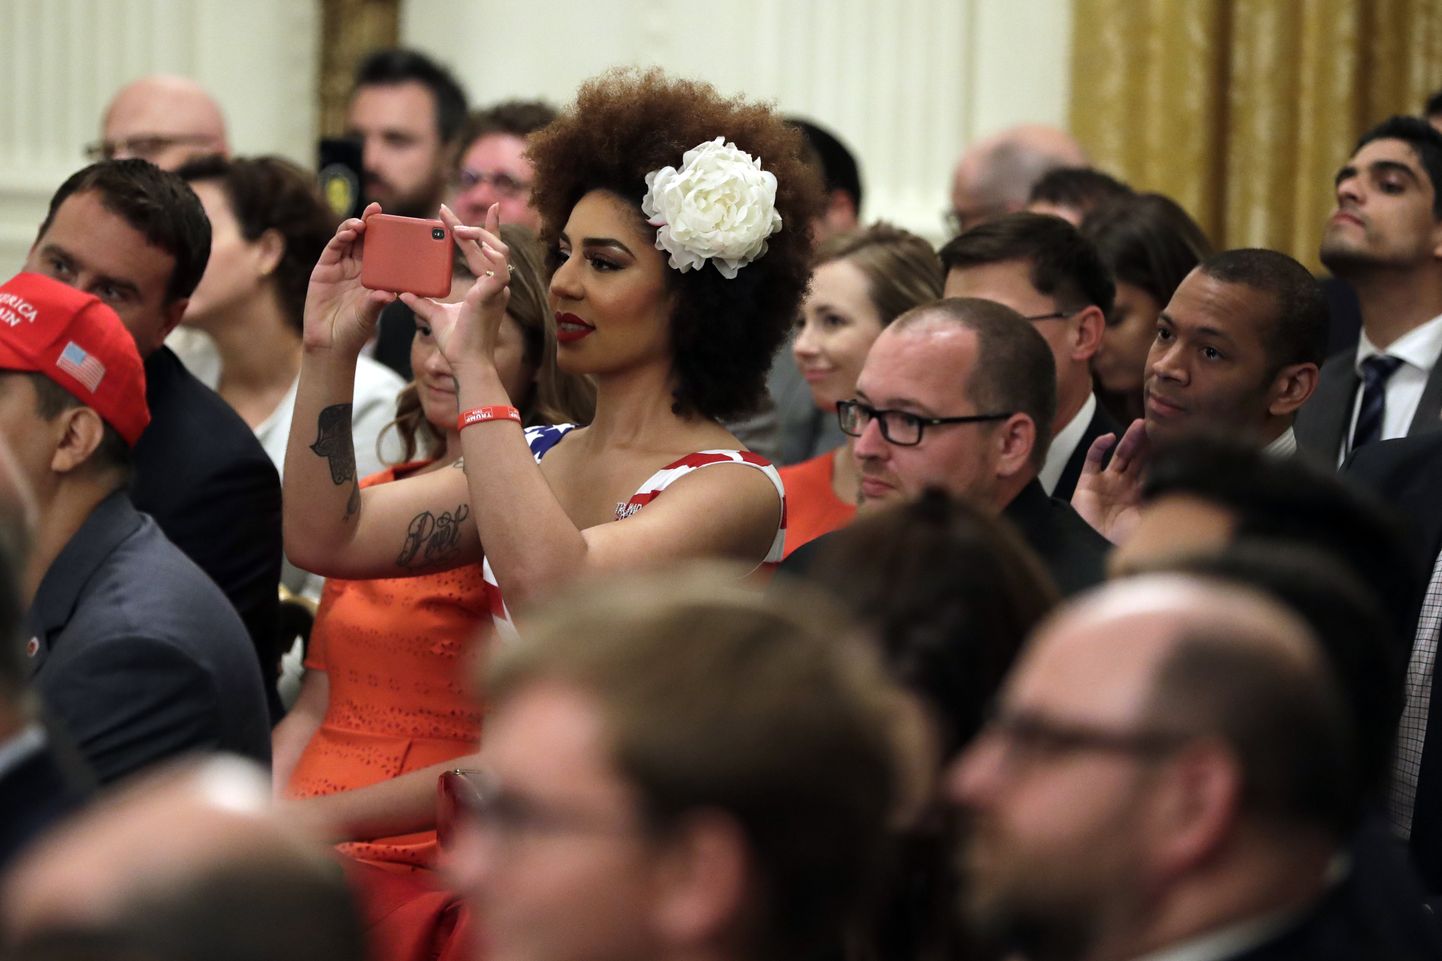 Külalised tegemas pilte USA presidendi Donald Trumpi sõnavõtu ajal Valges Majas, kus toimus presidendi eestvedamisel sotsiaalmeedia tippkohtumine.